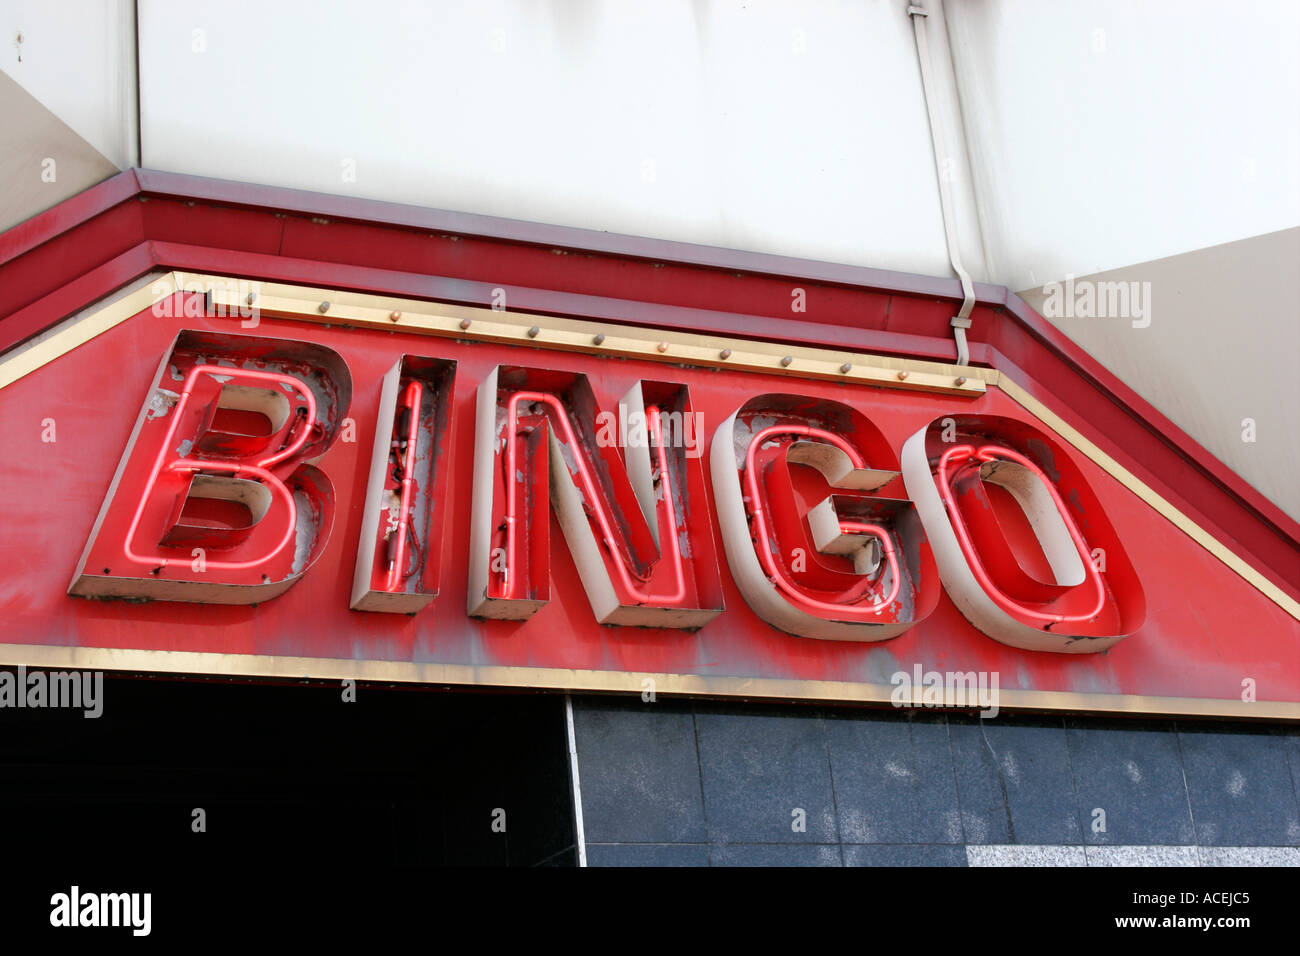 Bingo sign Stock Photo